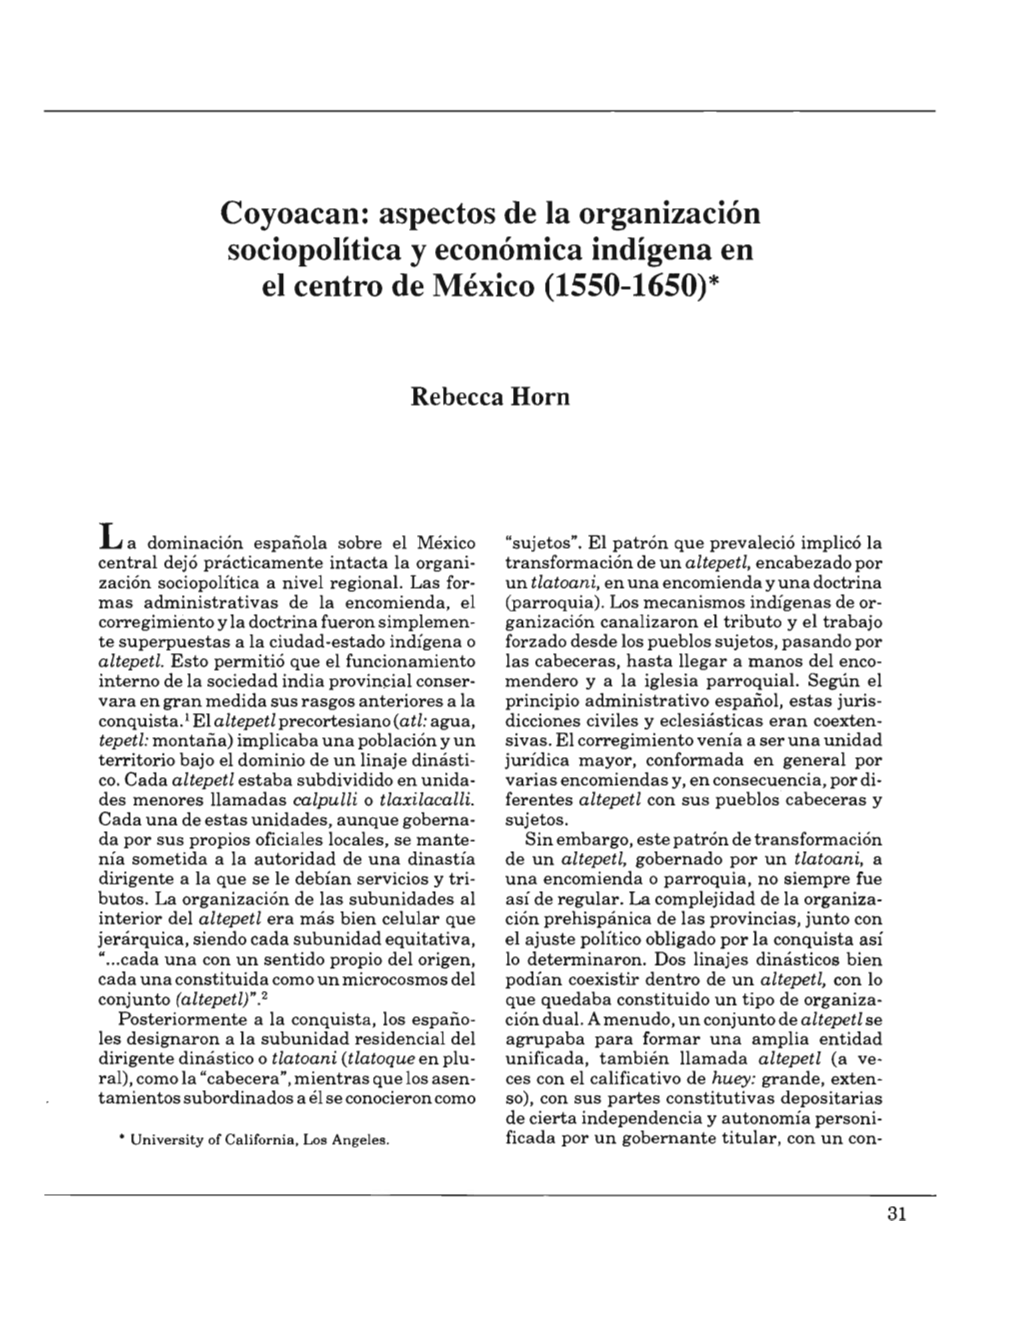 Coyoacan: Aspectos De La Organización Sociopolítica Y Económica Indígena En El Centro De México (1550-1650)*